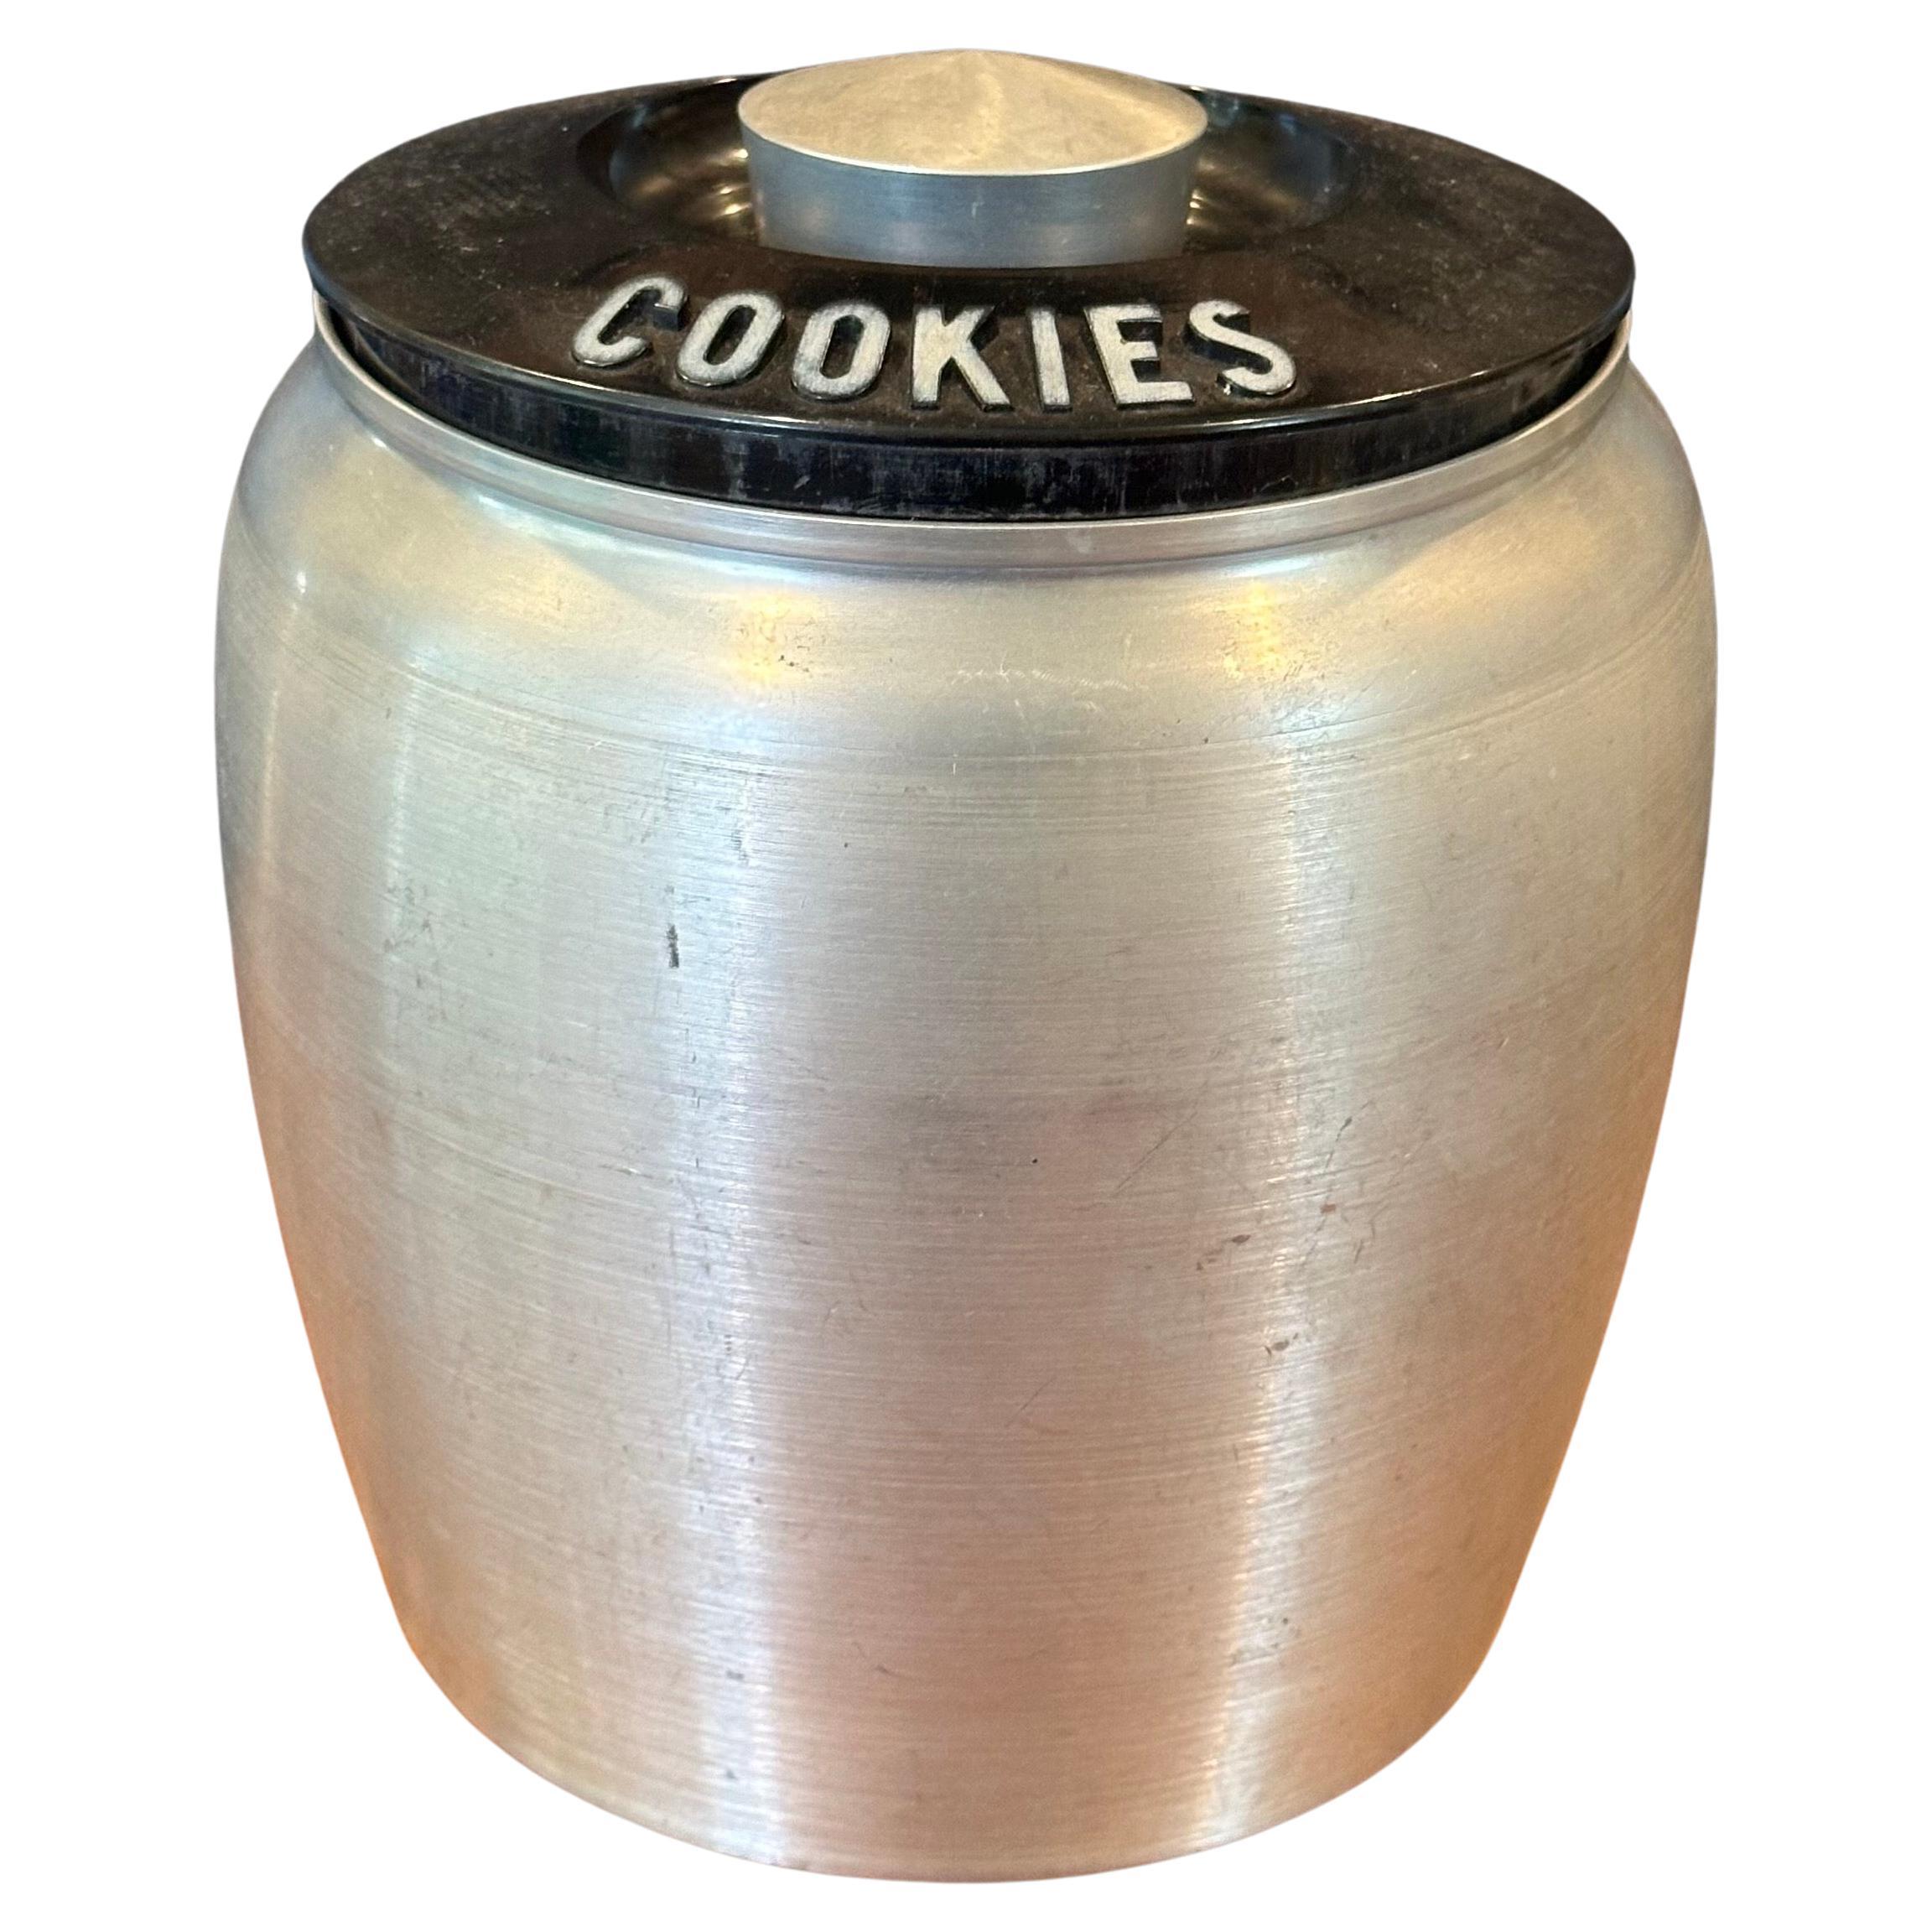 Art Deco Machine Age Spun Aluminum Cookie Jar by RJX